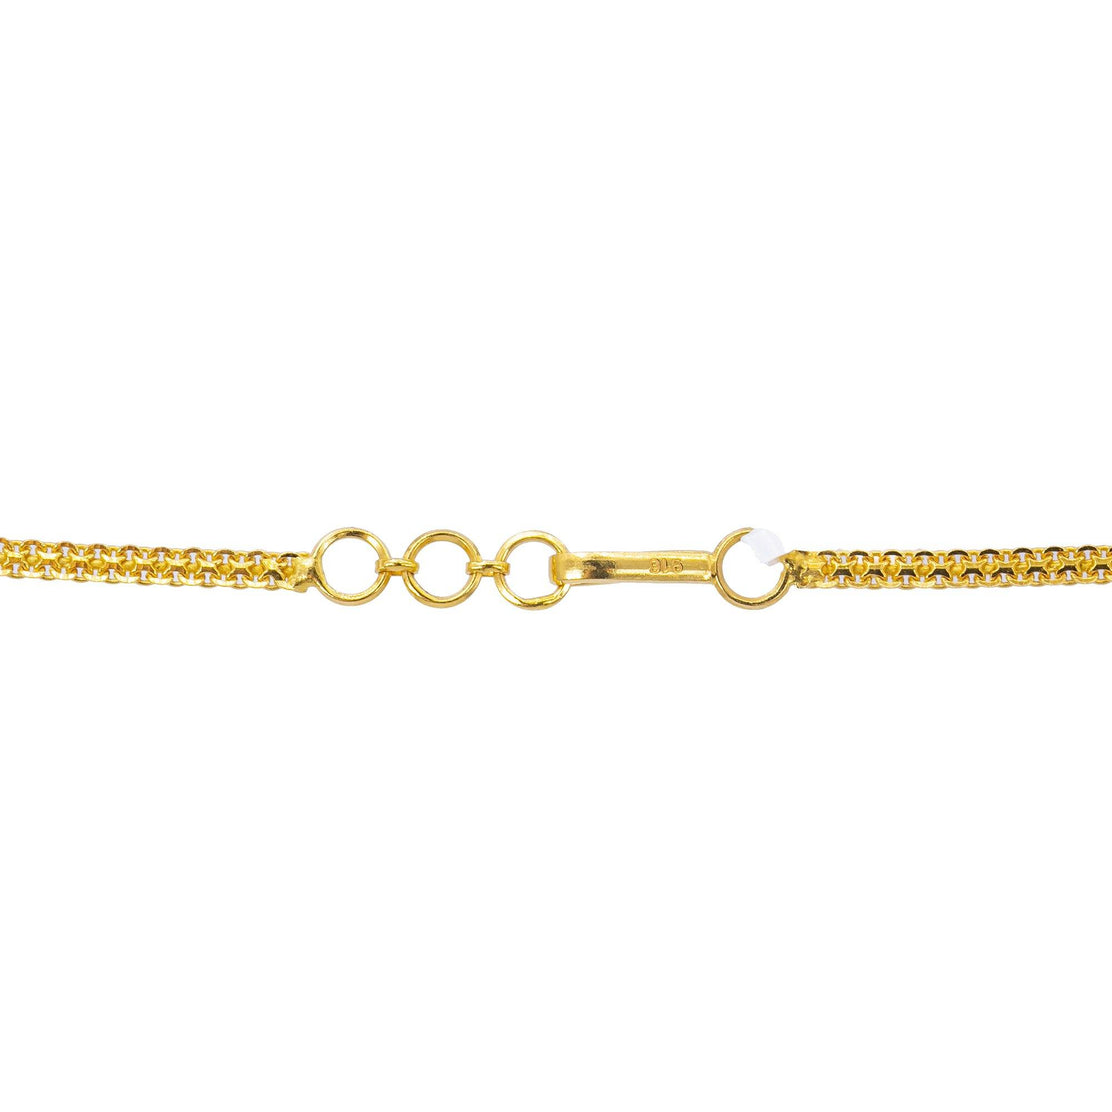 22K Gold & Gemstone Esha Laxmi Necklace – Virani Jewelers